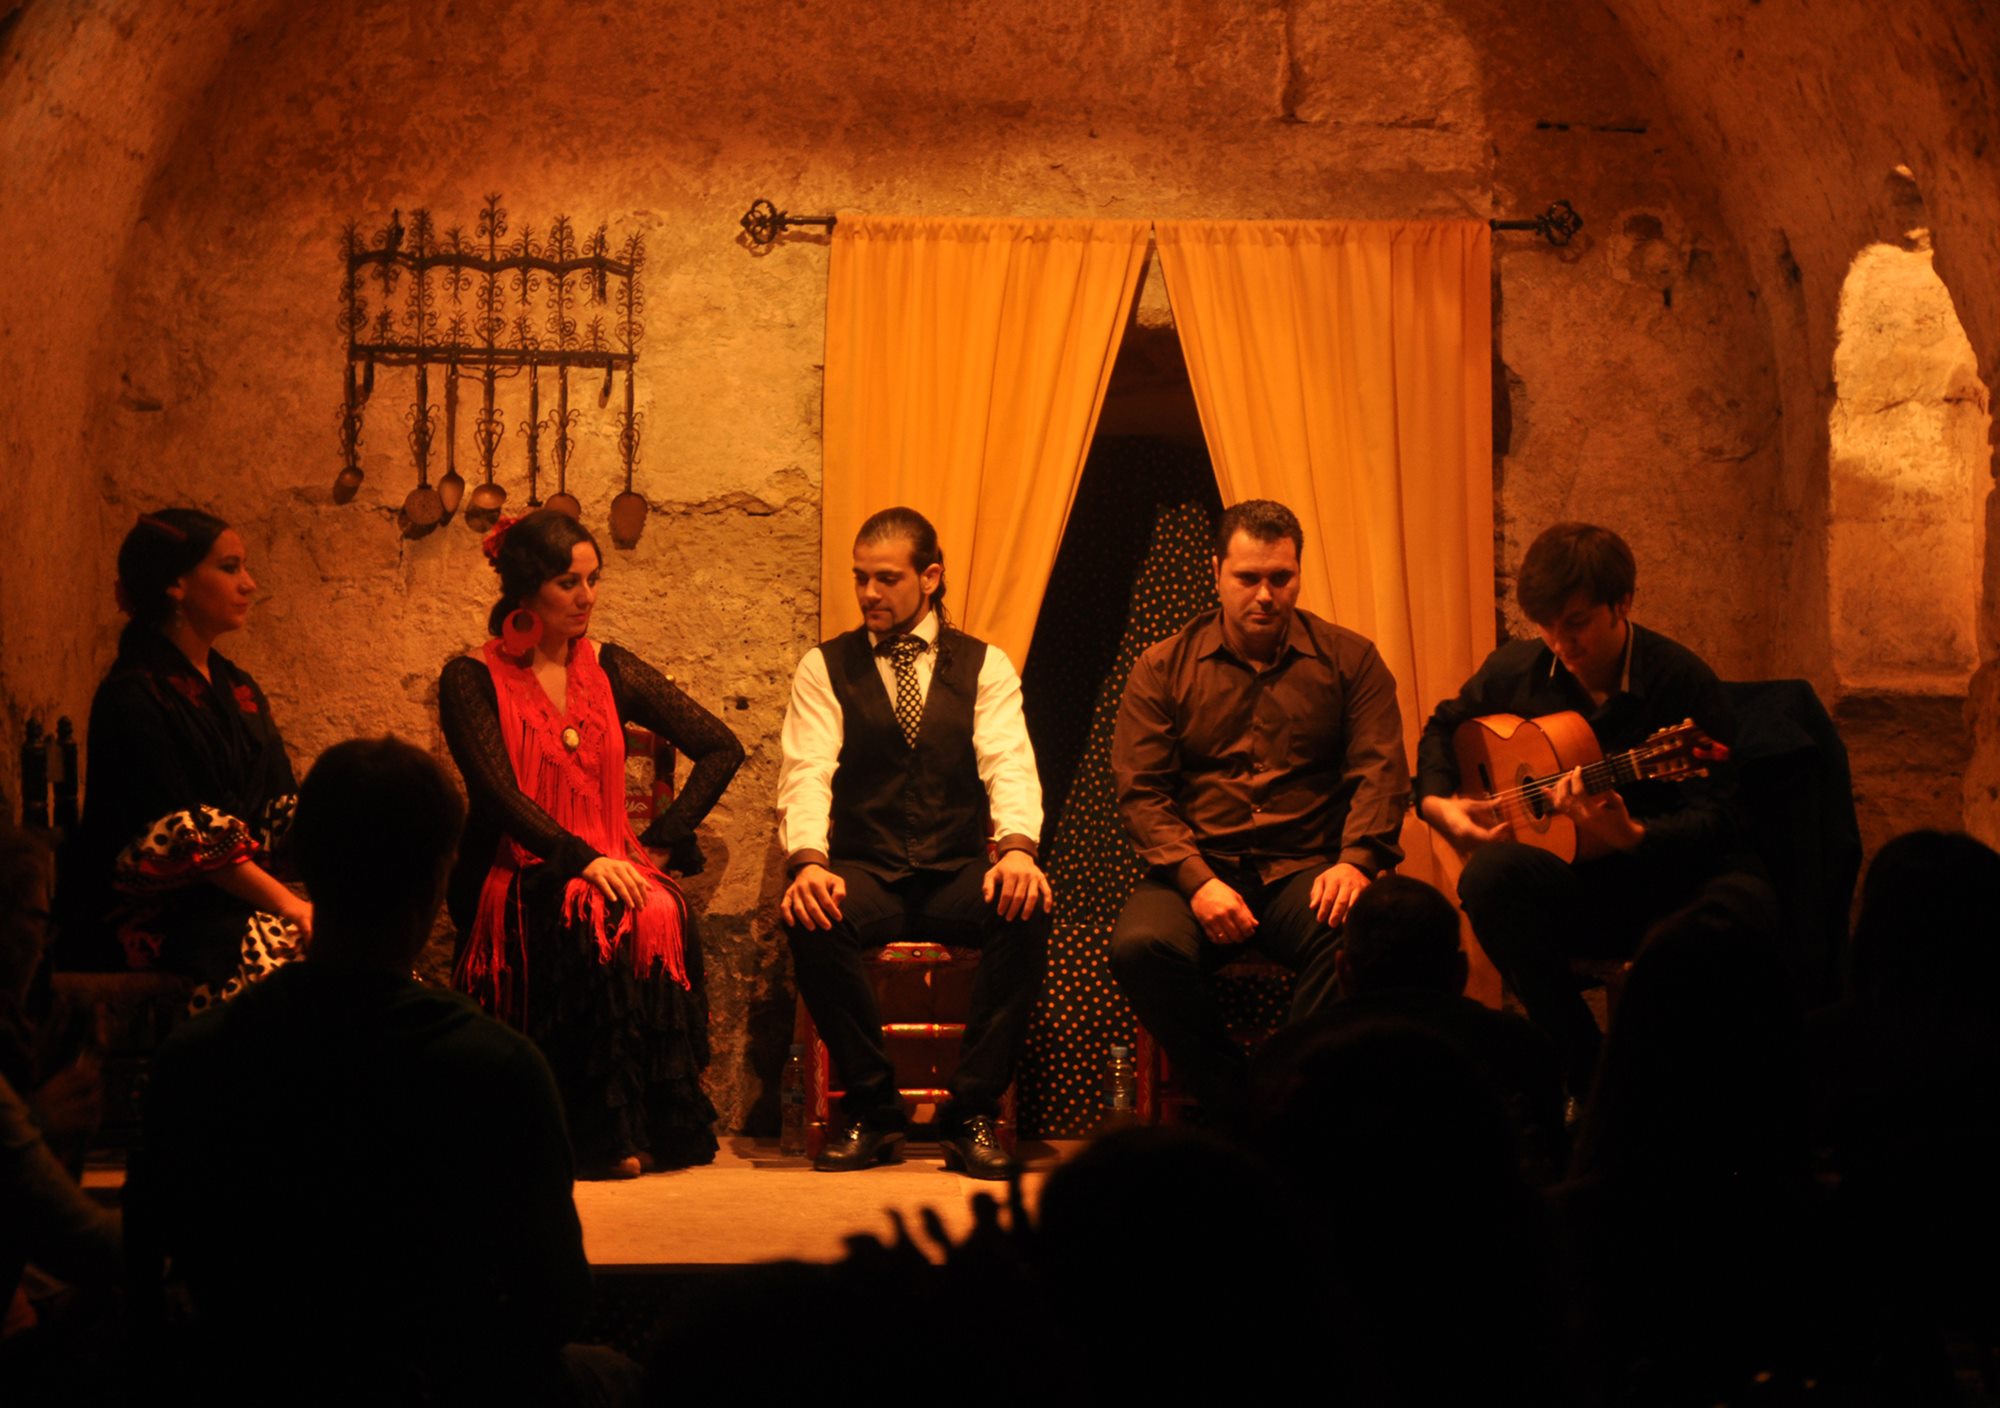 réserver acheter billets en ligne tickets online visiter visite spectacle show Flamenco et Passion à tablao Cordoue cordoba